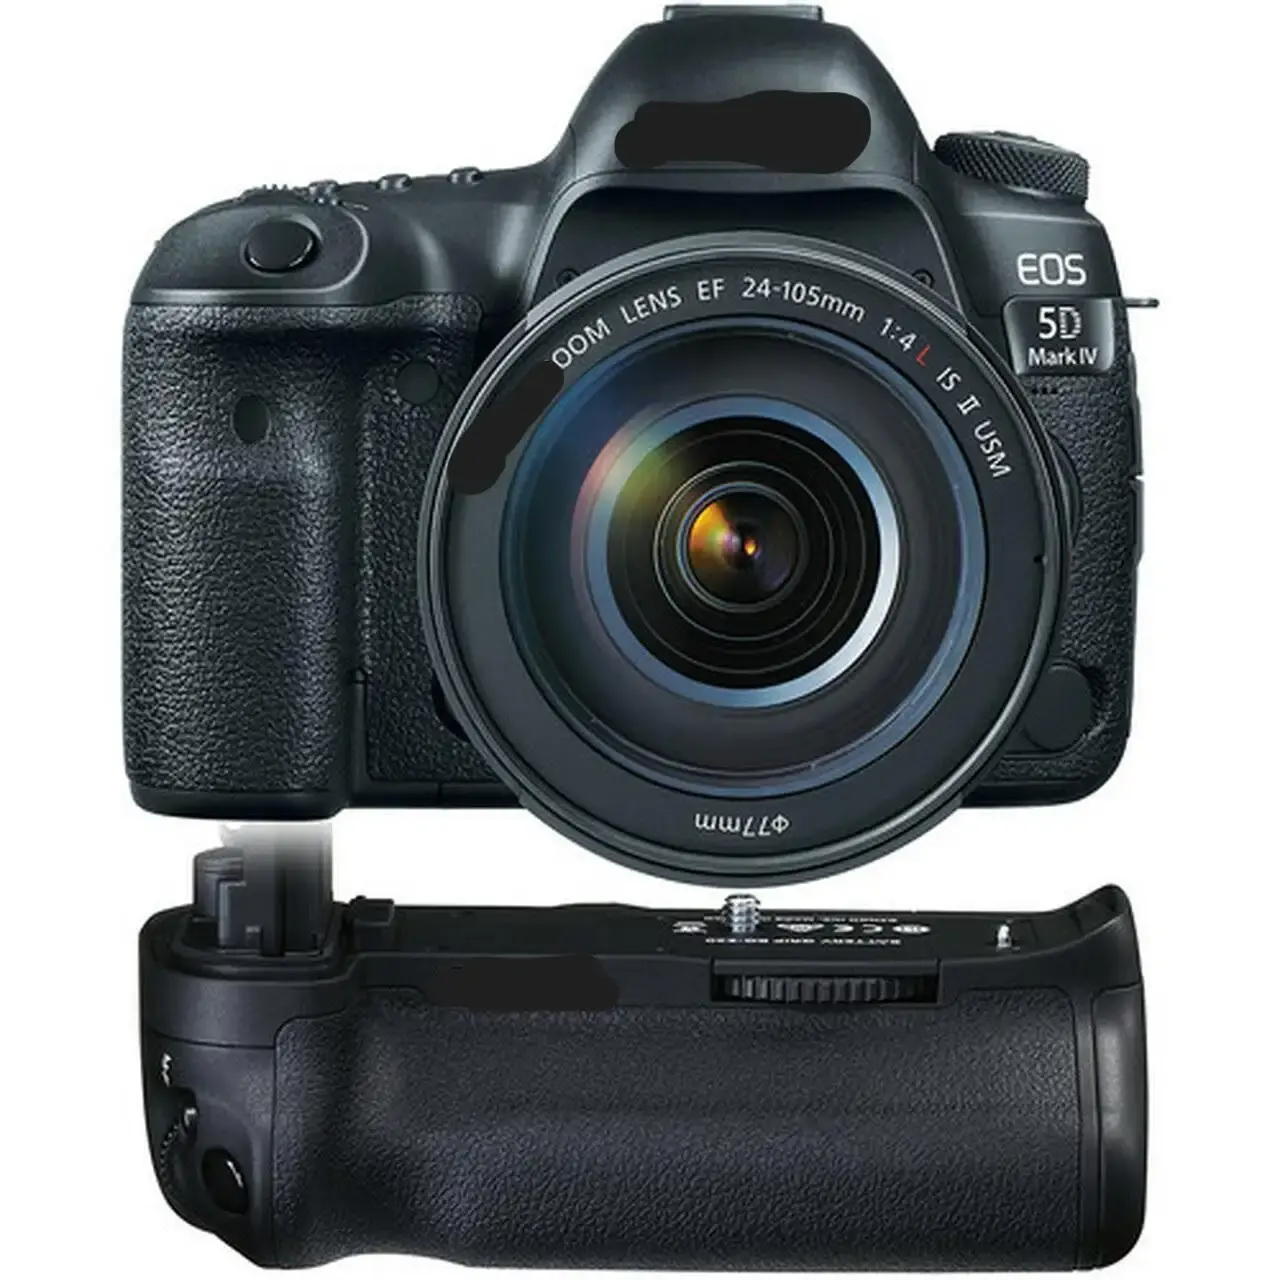 ACHETER MAINTENANT Appareil photo EOS5D Marque 5D avec batterie d'appareil photo reflex numérique avec qualité d'image colorée EF 24-105mm